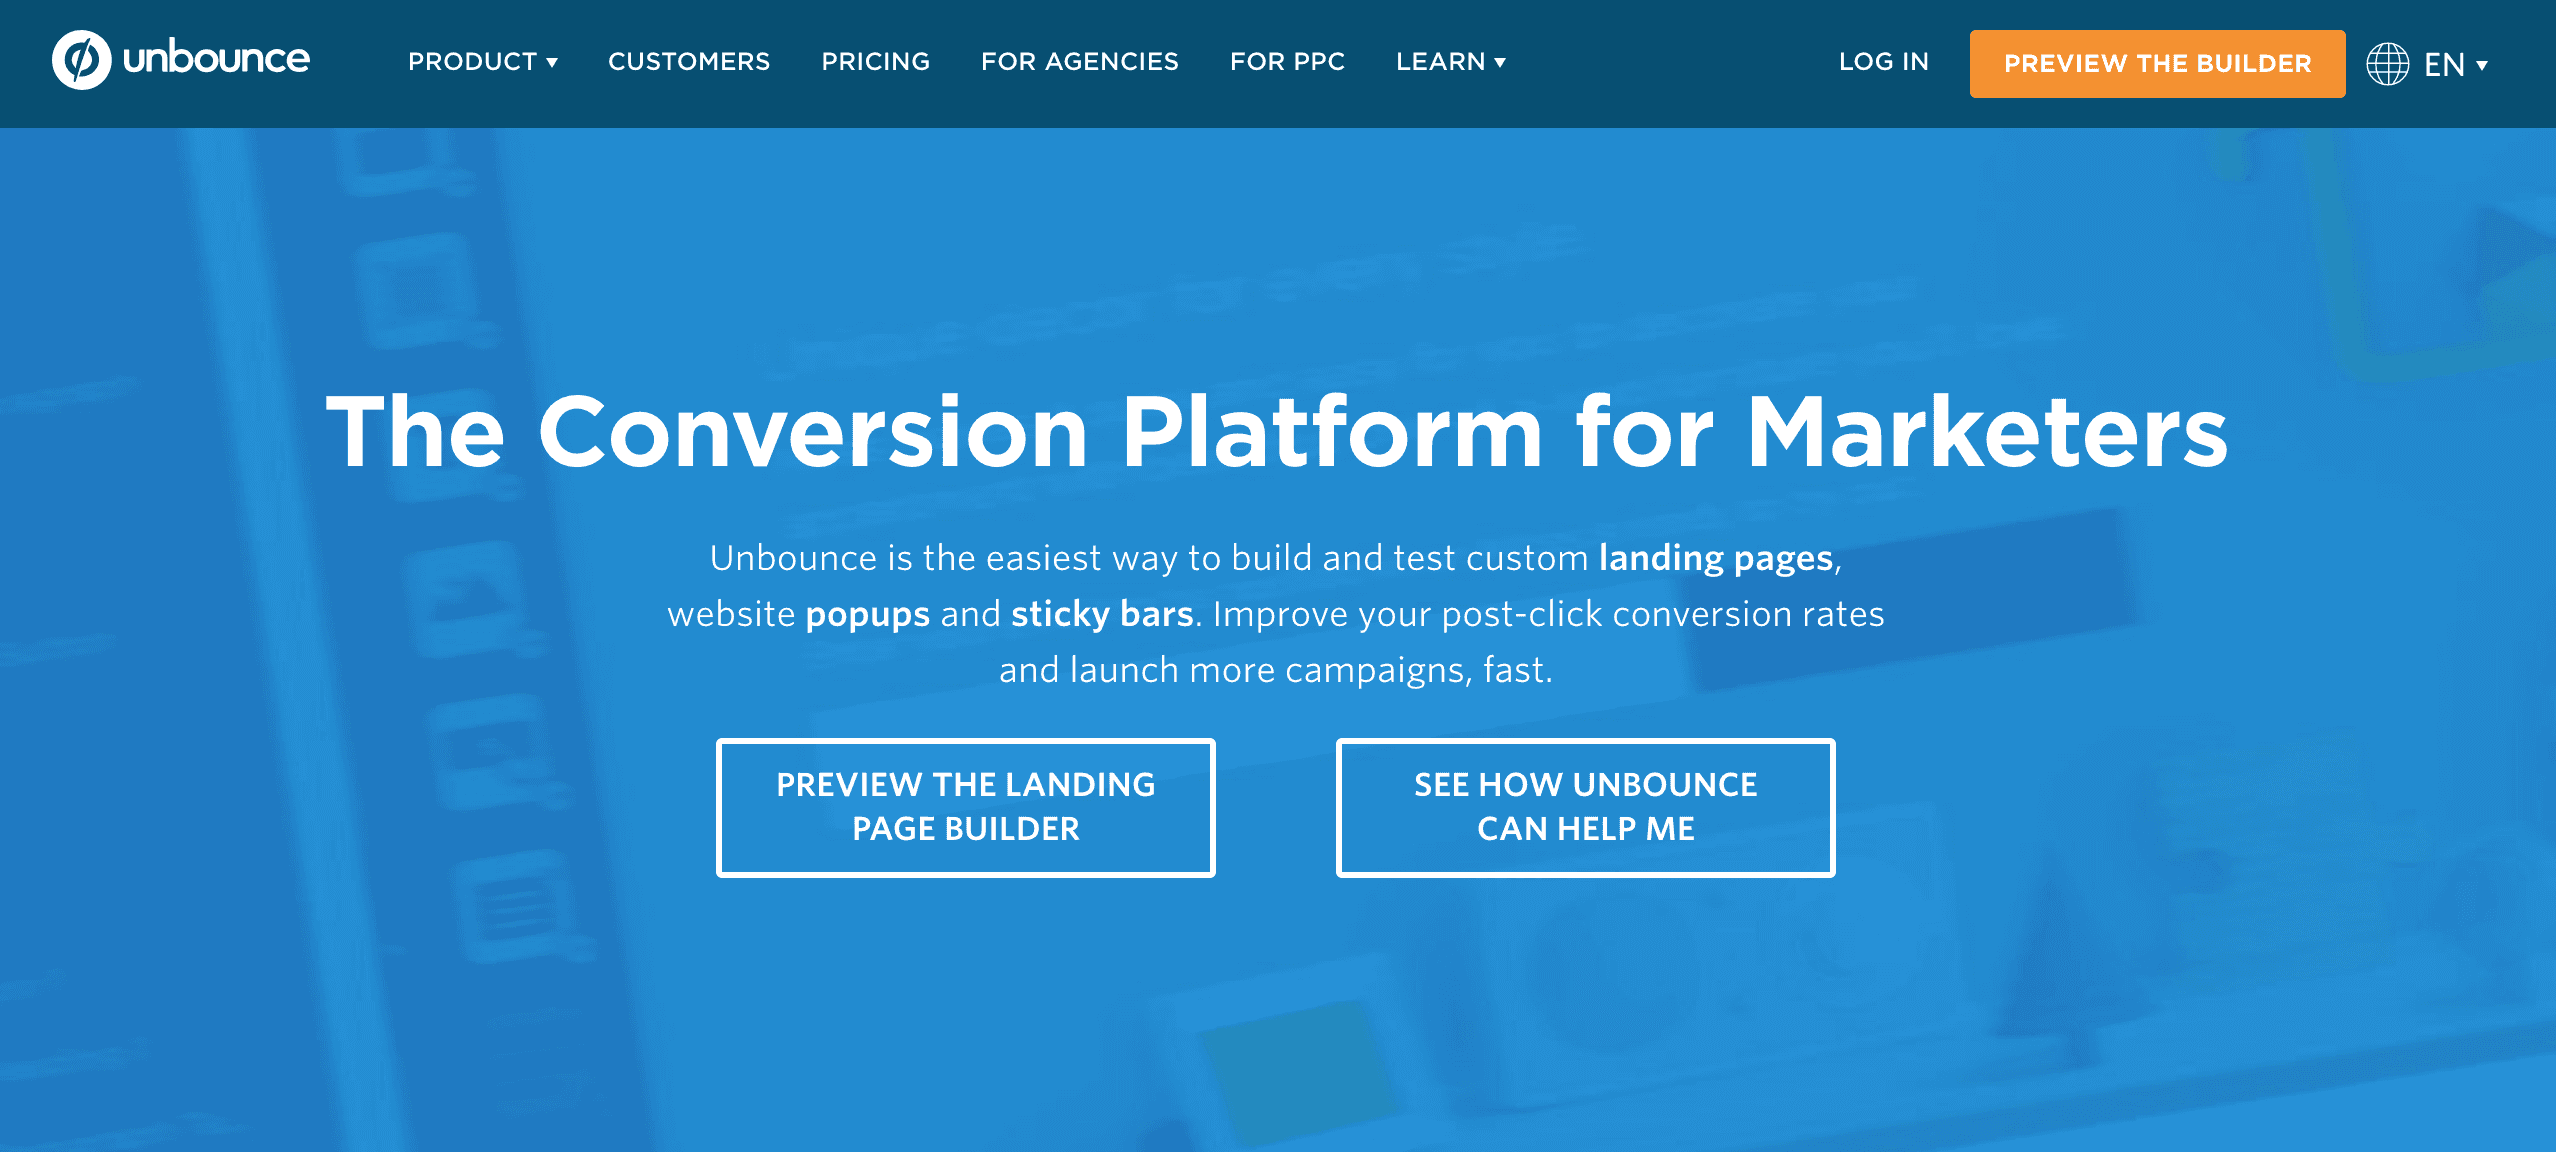 unbounce conversion platform